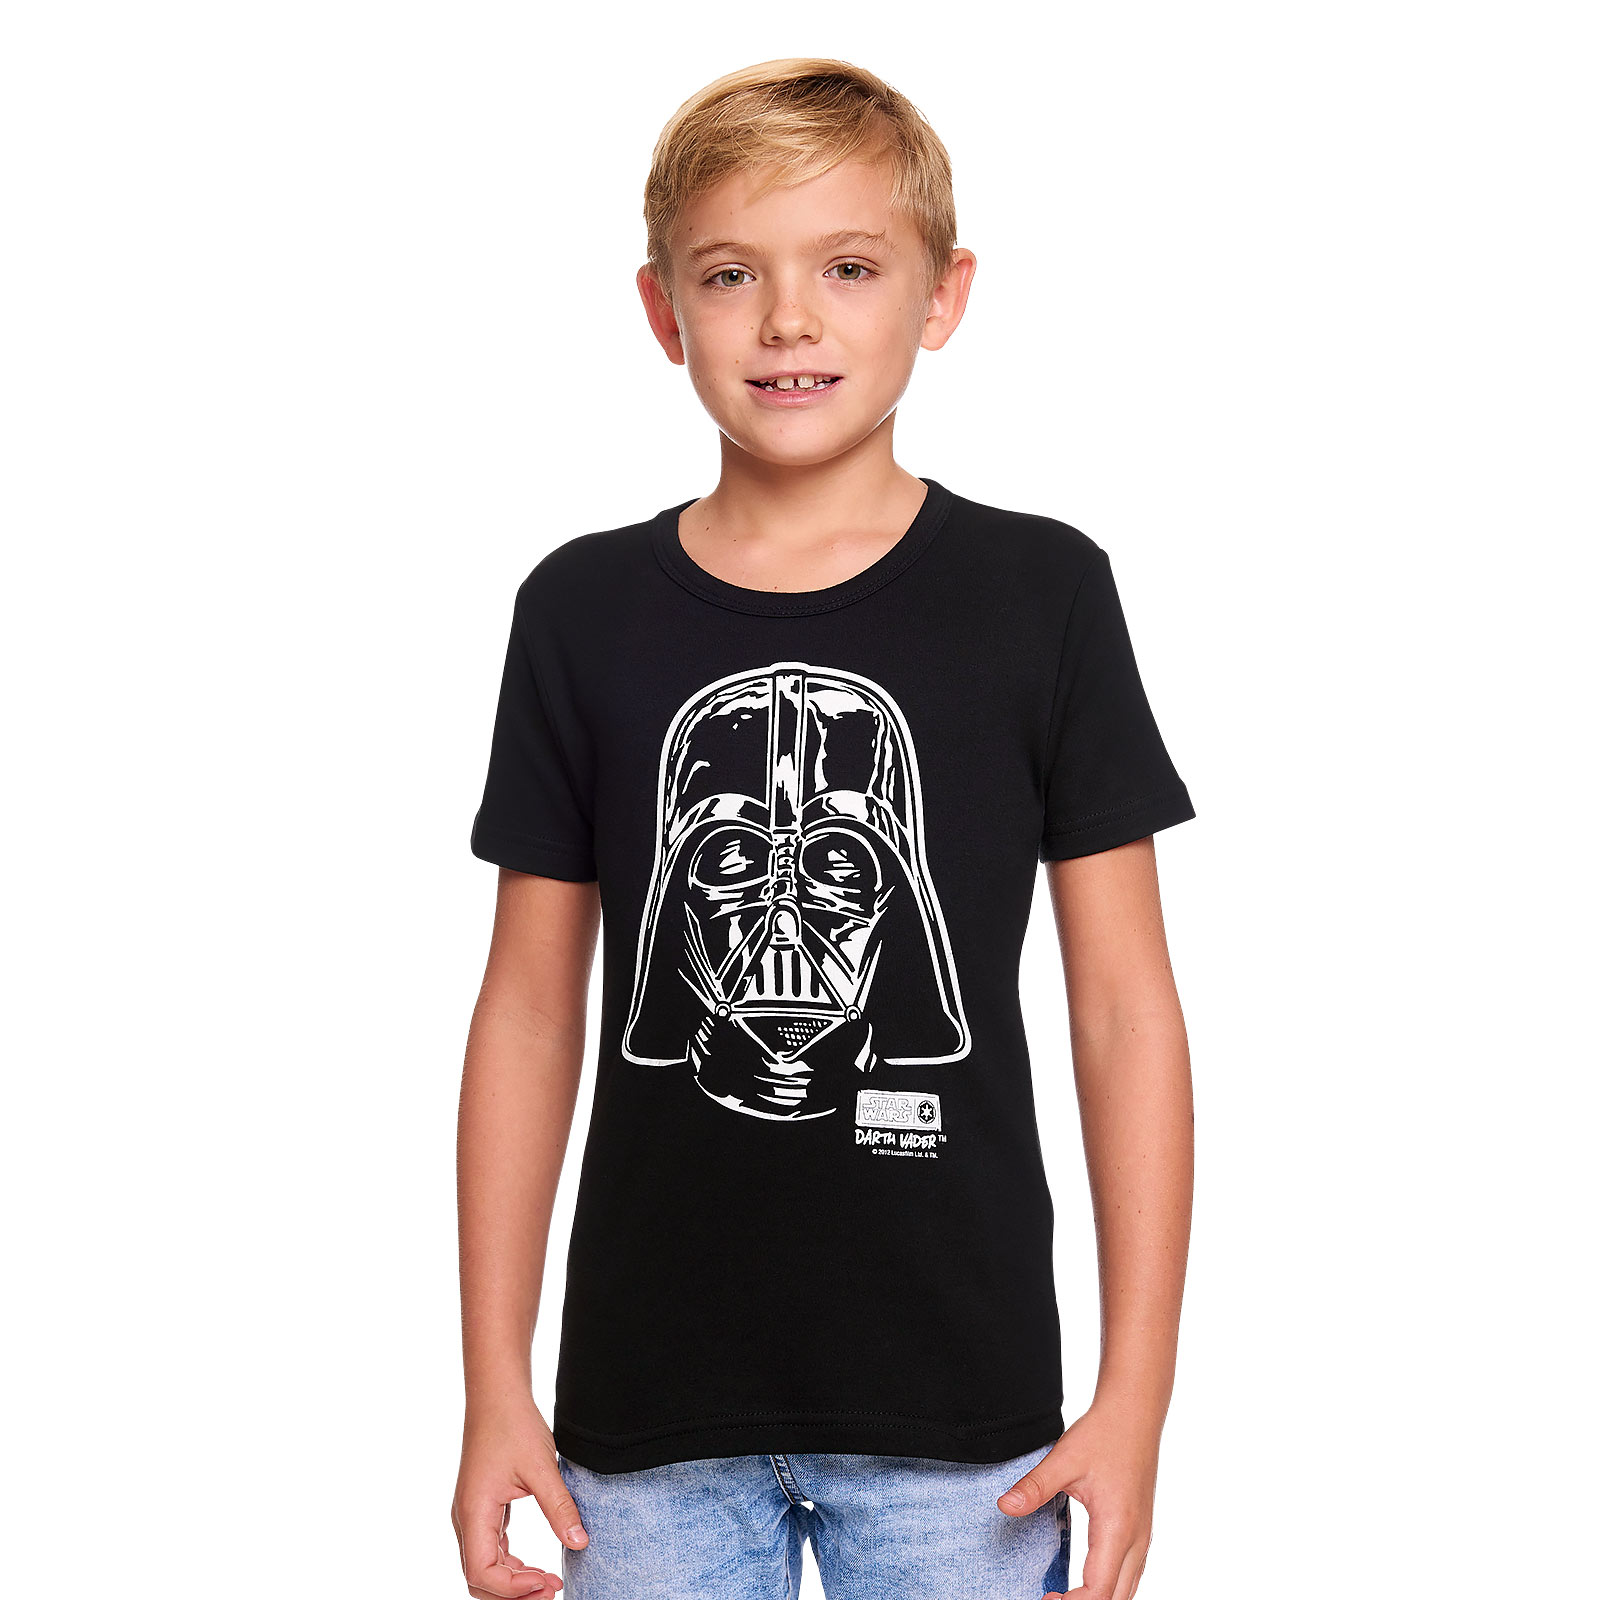 Star Wars - Darth Vader Portrait Kids Shirt